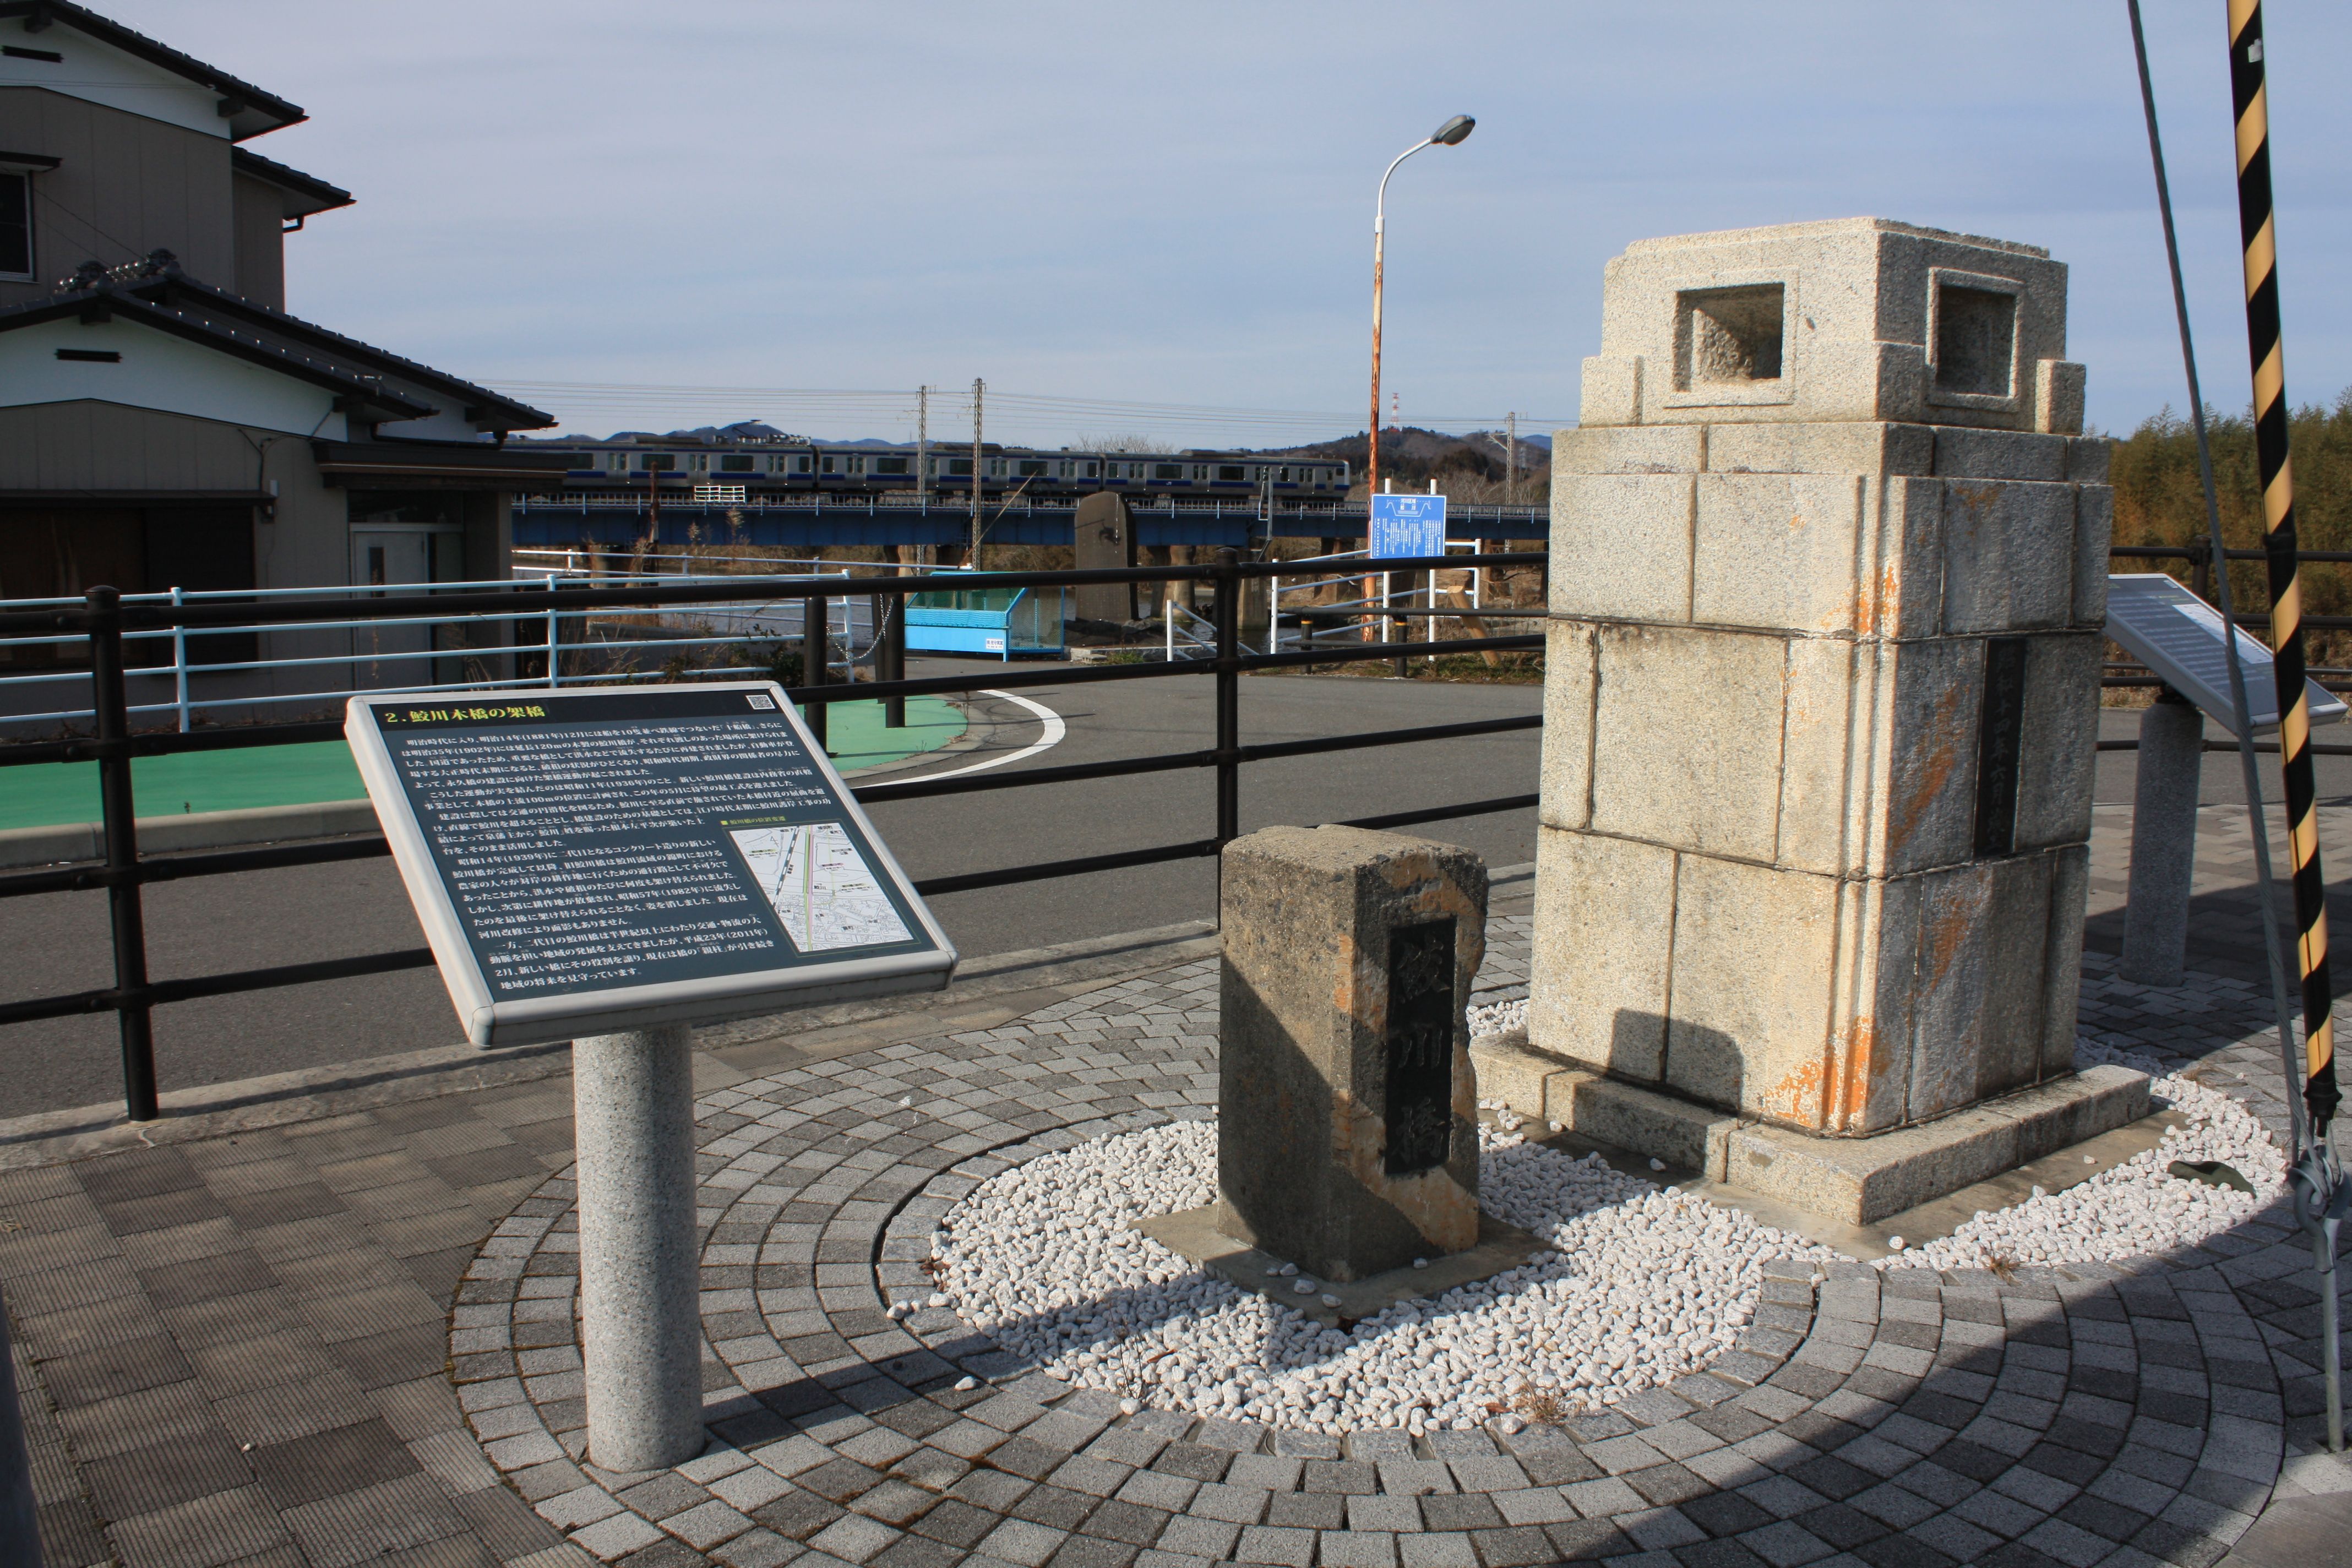 14 旧鮫川橋の御柱と解説板(令和2年1月、おやけこういち氏撮影)